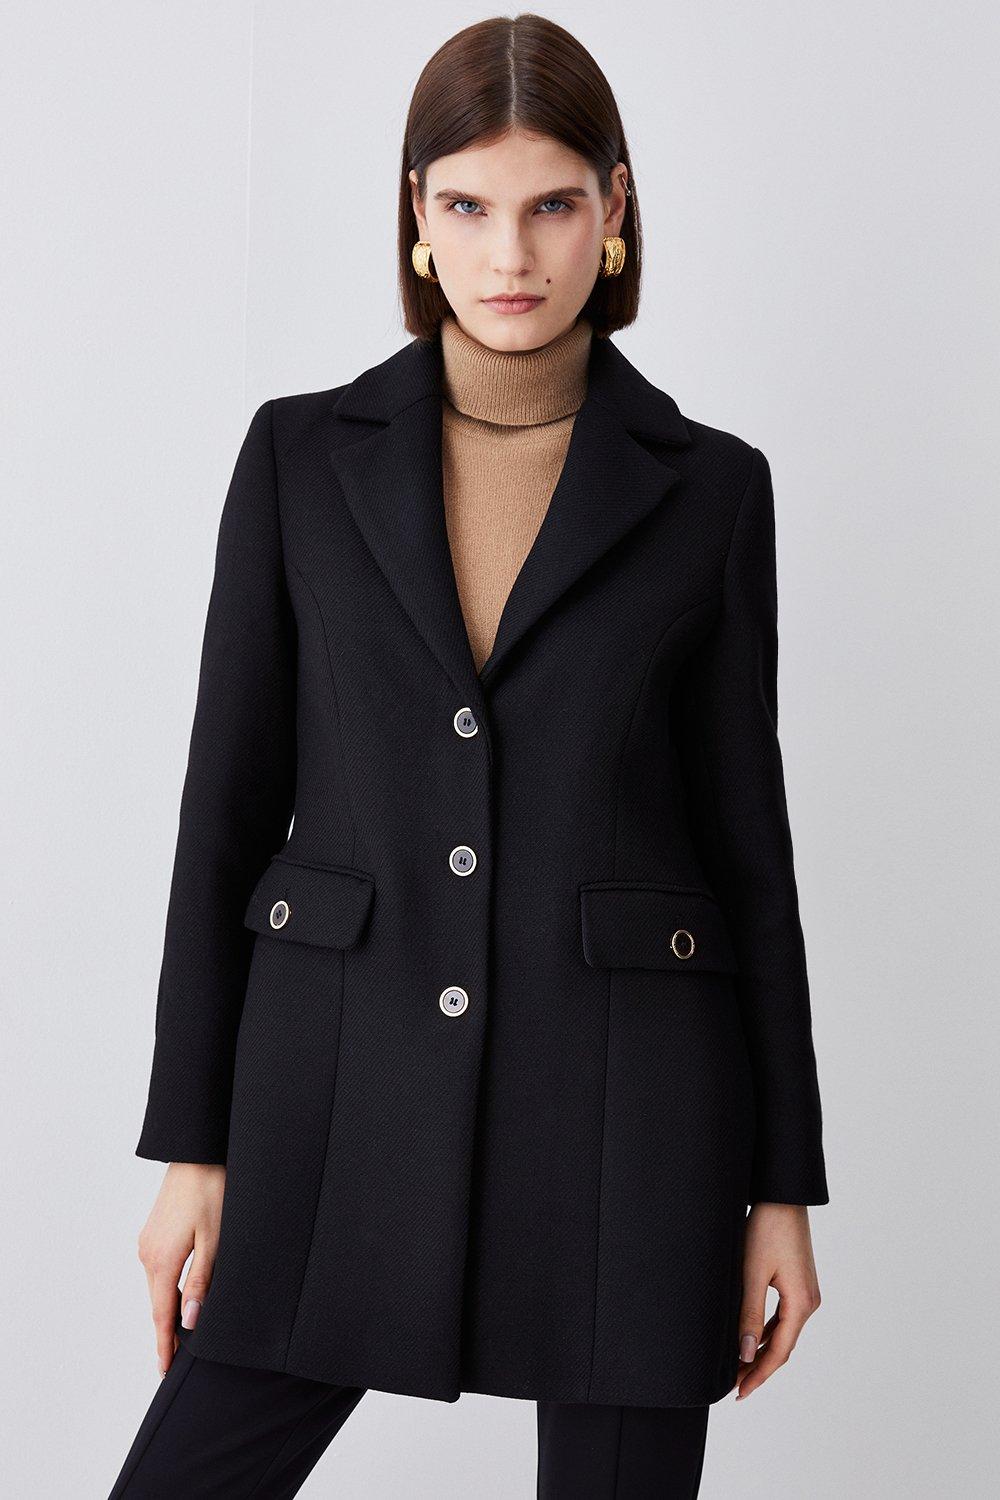 Jackets & Coats | Italian Wool Mix Short Formal Coat | KarenMillen